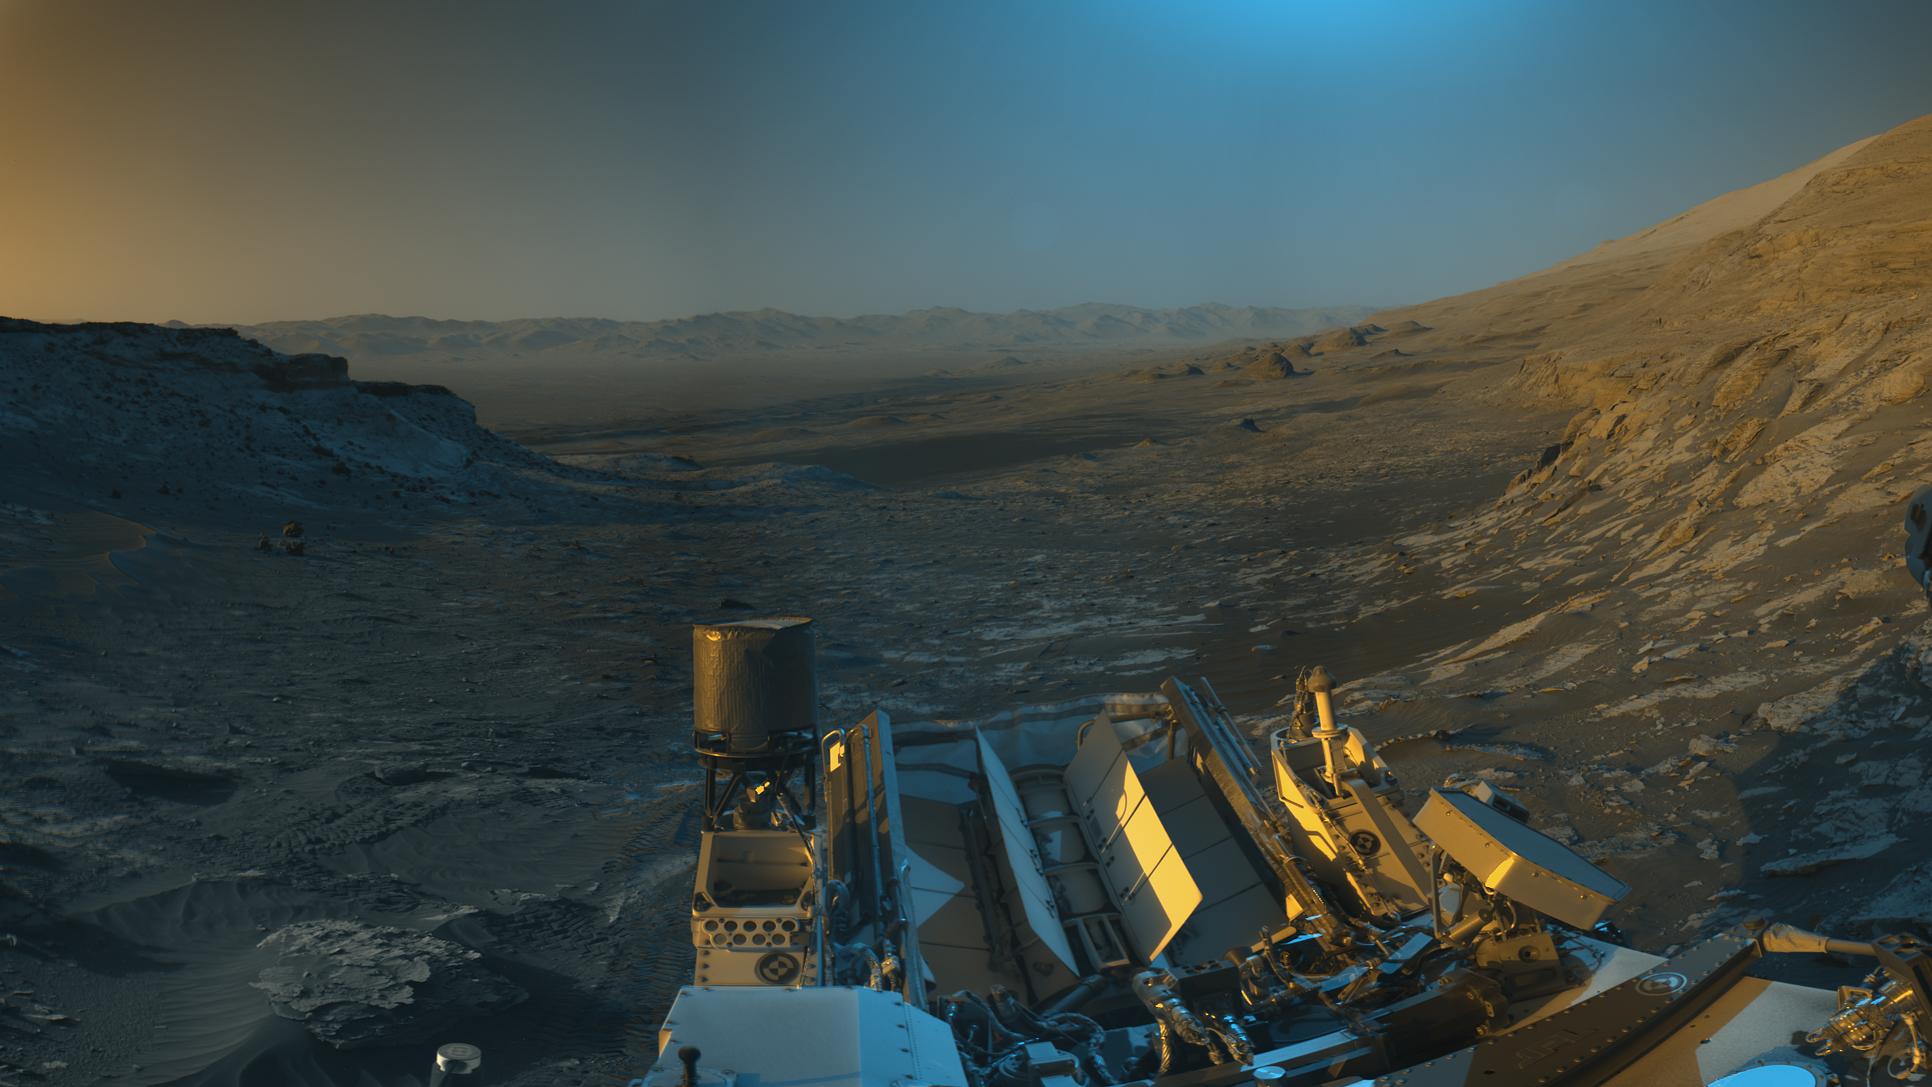 L’analyse de sédiments par le rover de la Nasa Curiosity révèle des quantités relatives des isotopes 12 et 13 du carbone inhabituelles. Des quantités qui, sur Terre, sont le signe de la vie. Mais en va-t-il de même sur Mars ? Panorama capturé par les NavCam de Curiosity le 16 novembre 2021. © Nasa, JPL-Caltech